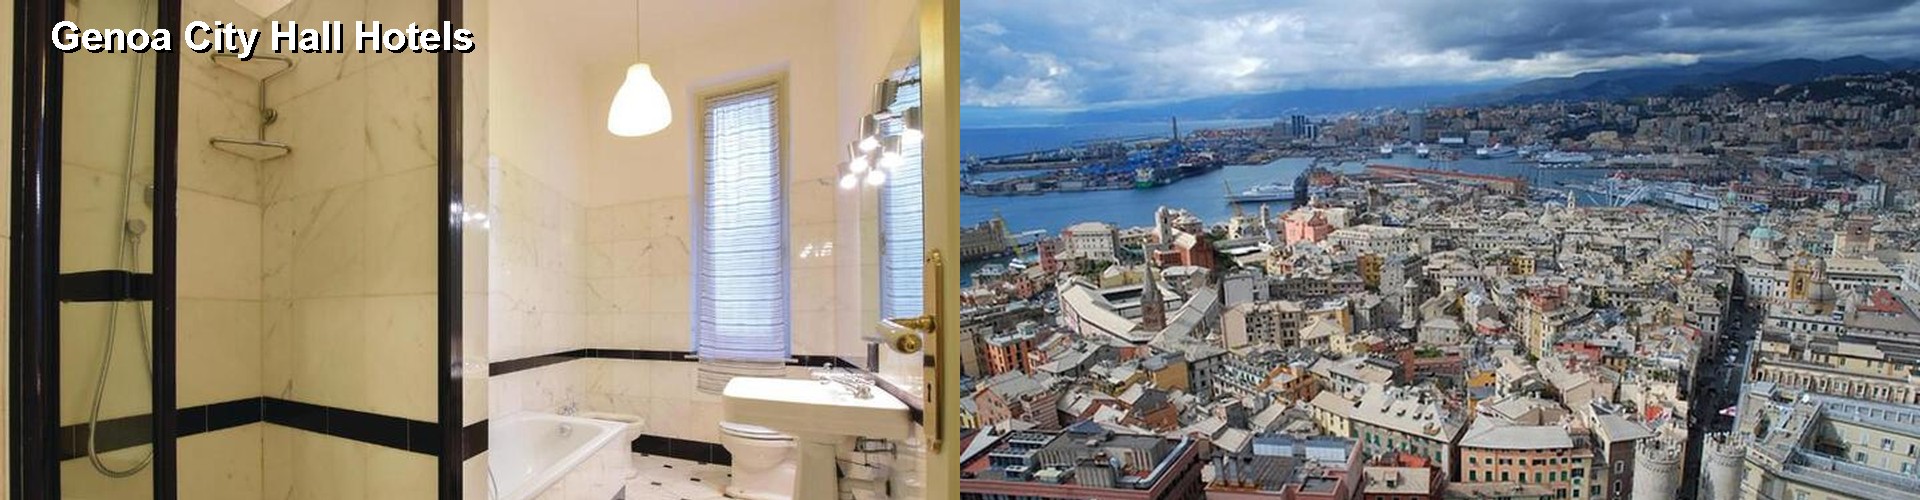 5 Best Hotels near Genoa City Hall